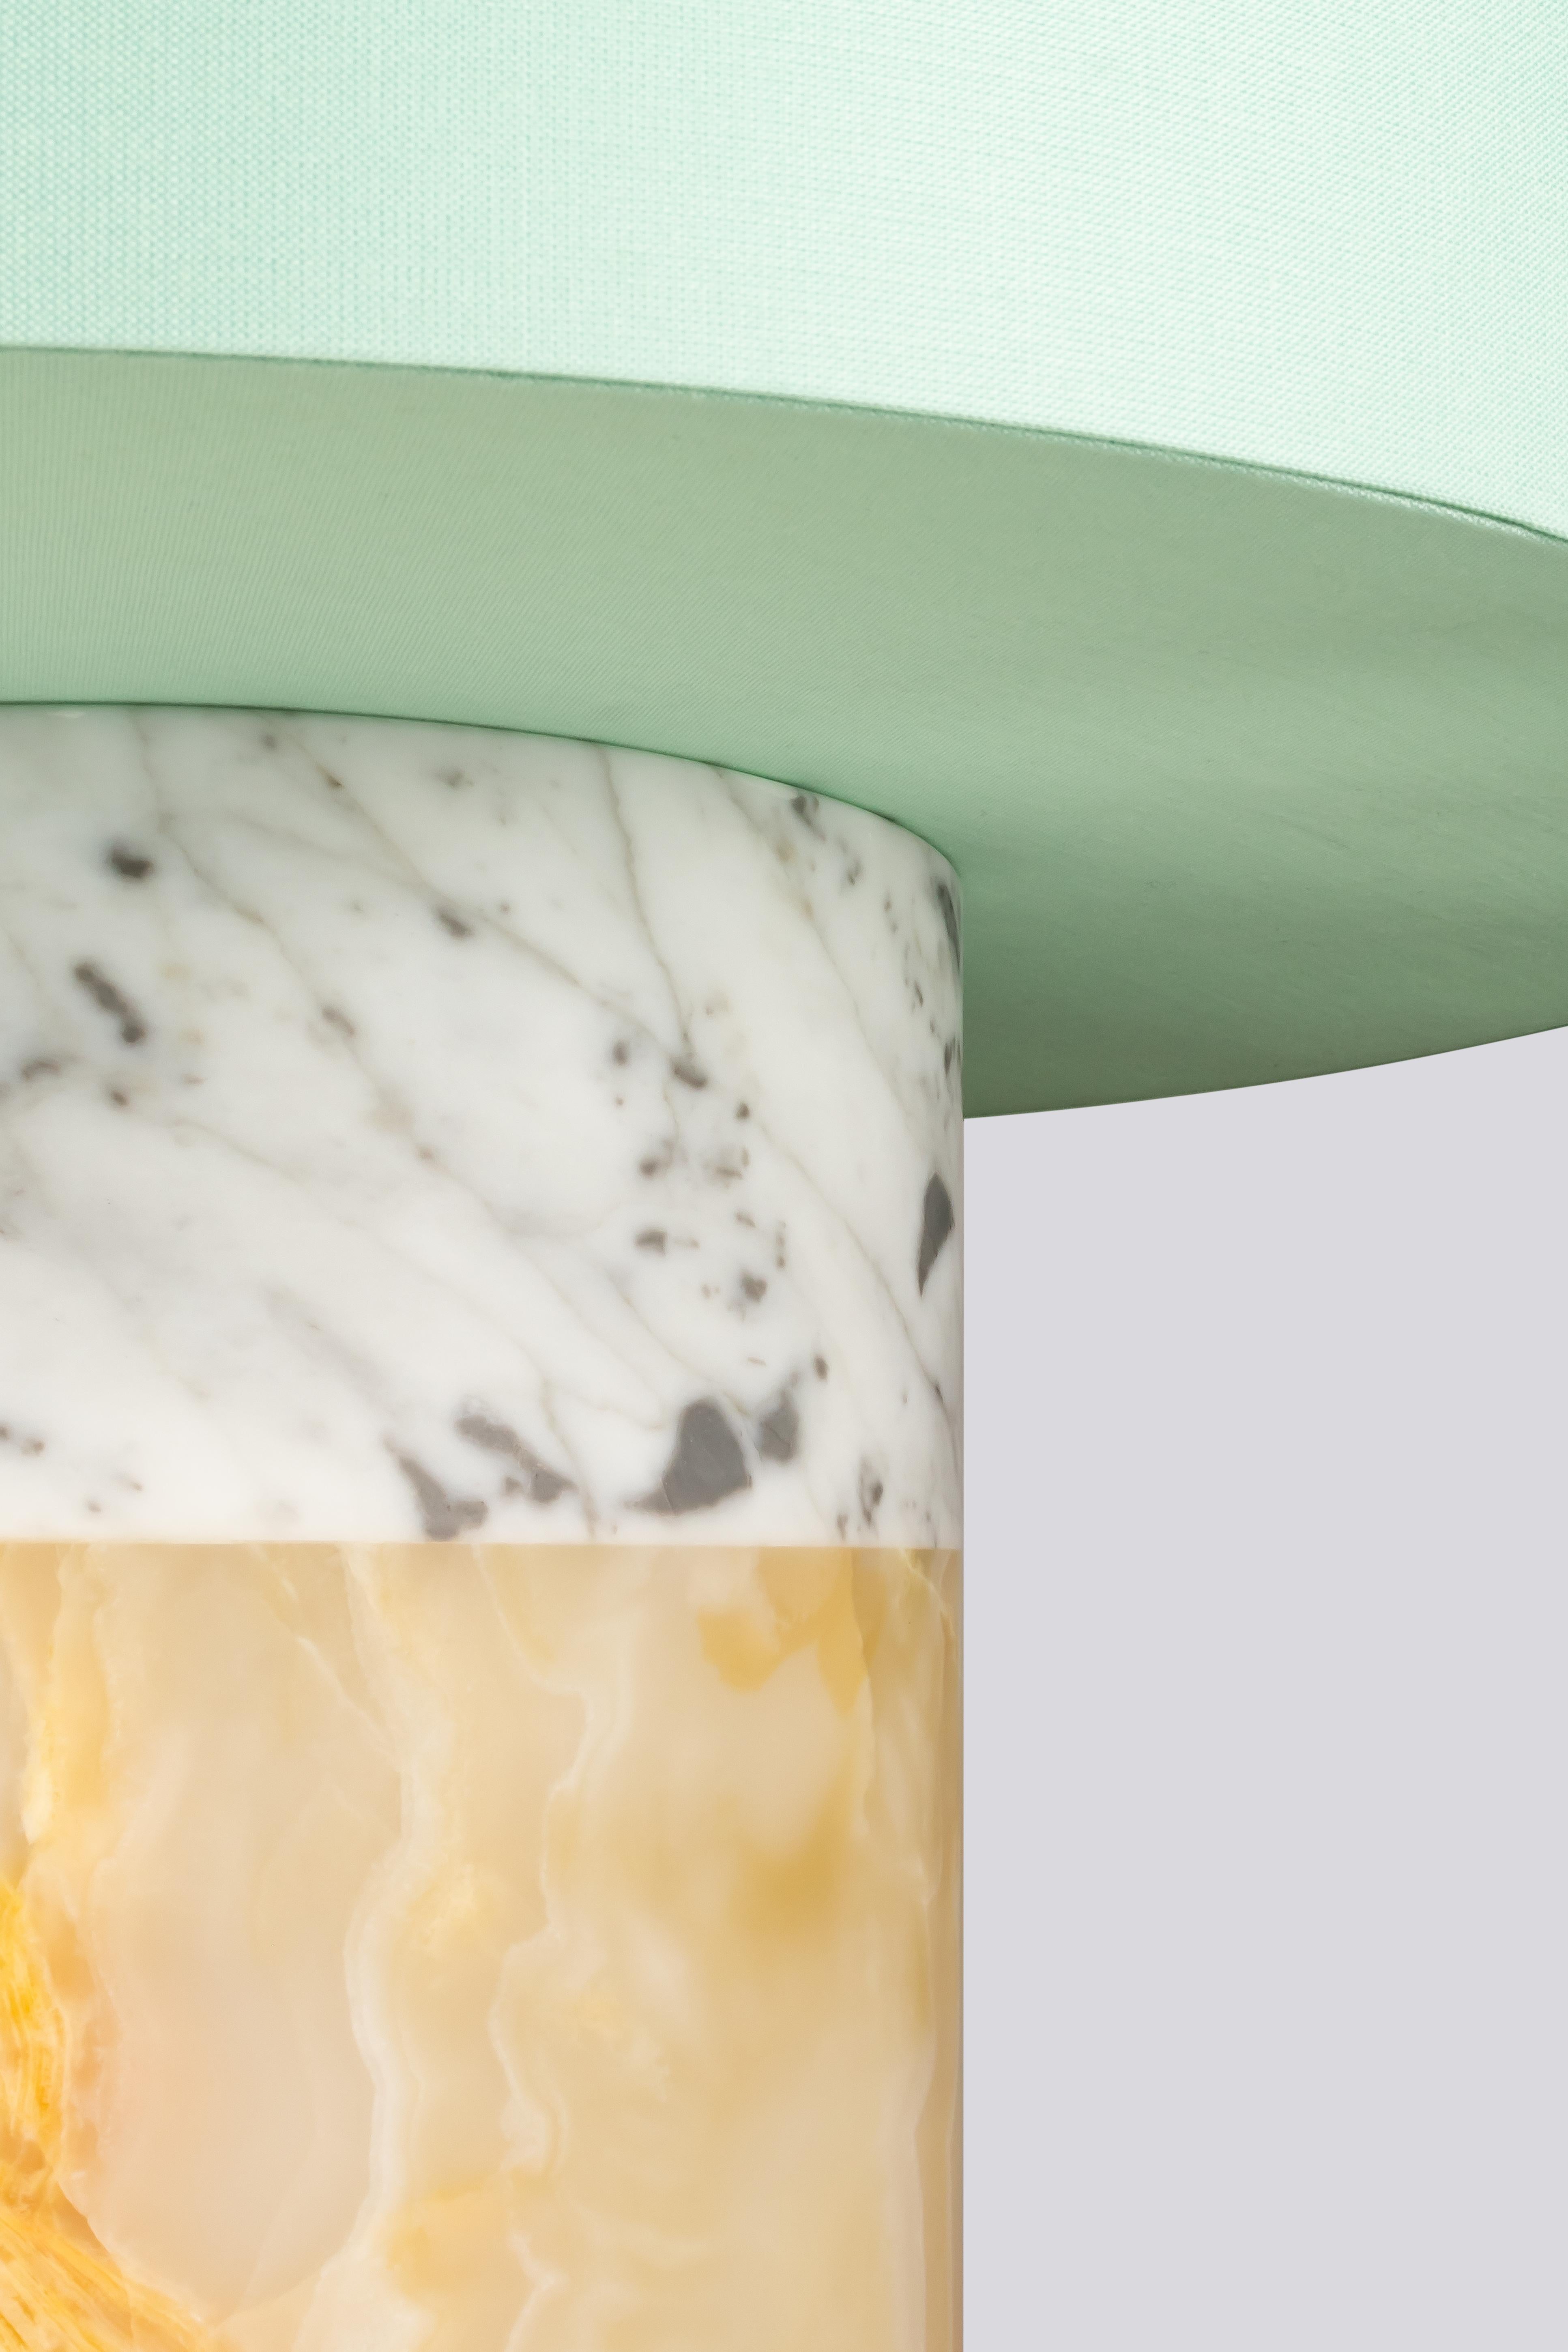 Découvrez notre exquise lampe à poser en marbre & onyx, une pièce intemporelle et contemporaine qui allie élégance et savoir-faire. La base de la lampe, savamment travaillée en forme de colonne classique, met en valeur deux matériaux de luxe : le